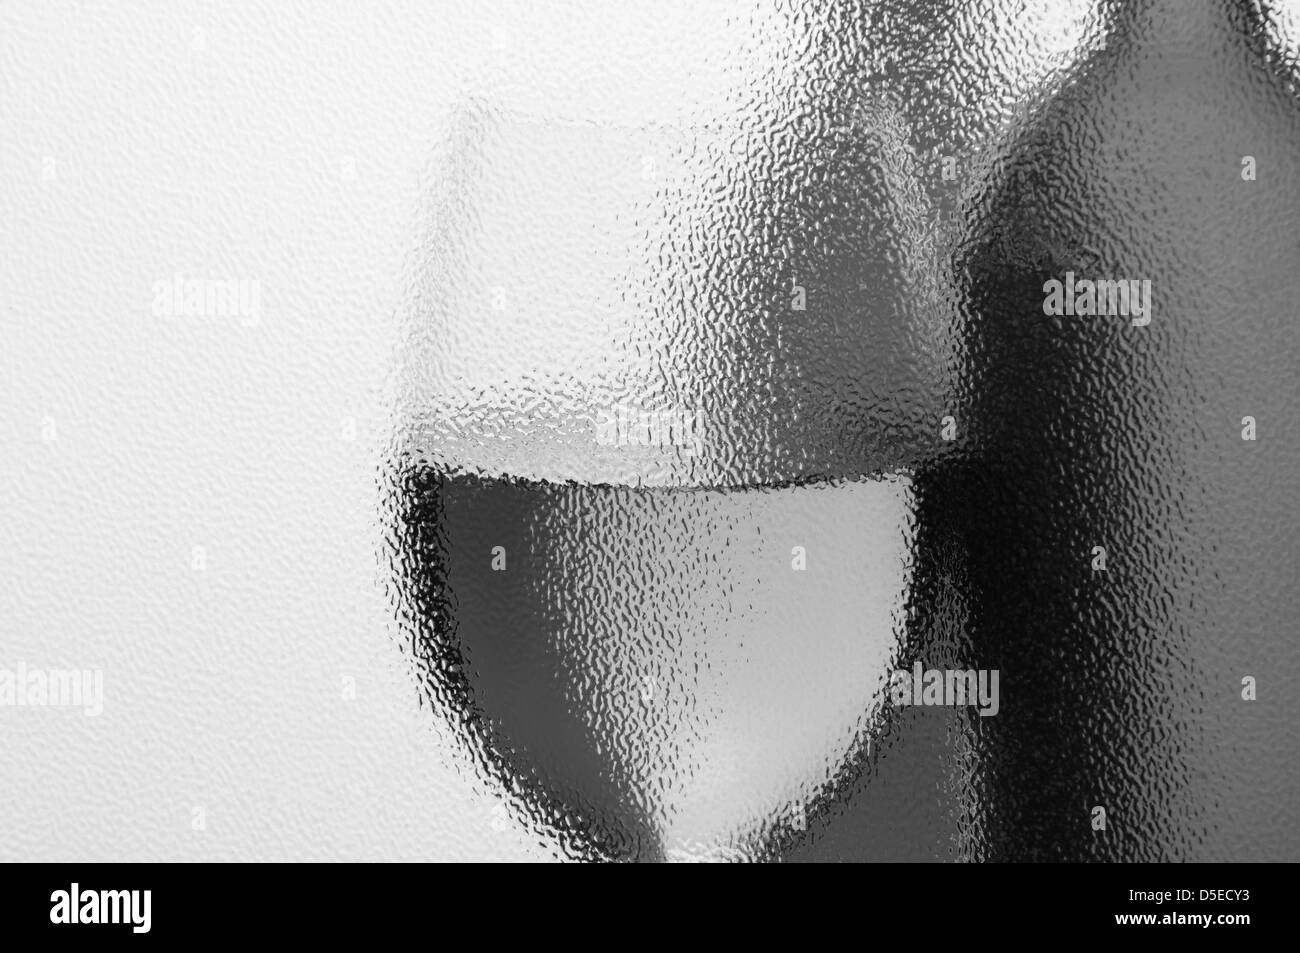 Wein-Flaschen und Weinglas in Monotone durch ein strukturiertes Fenster mit Hintergrundbeleuchtung zu sehen. Horizontale Komposition mit Exemplar. Stockfoto